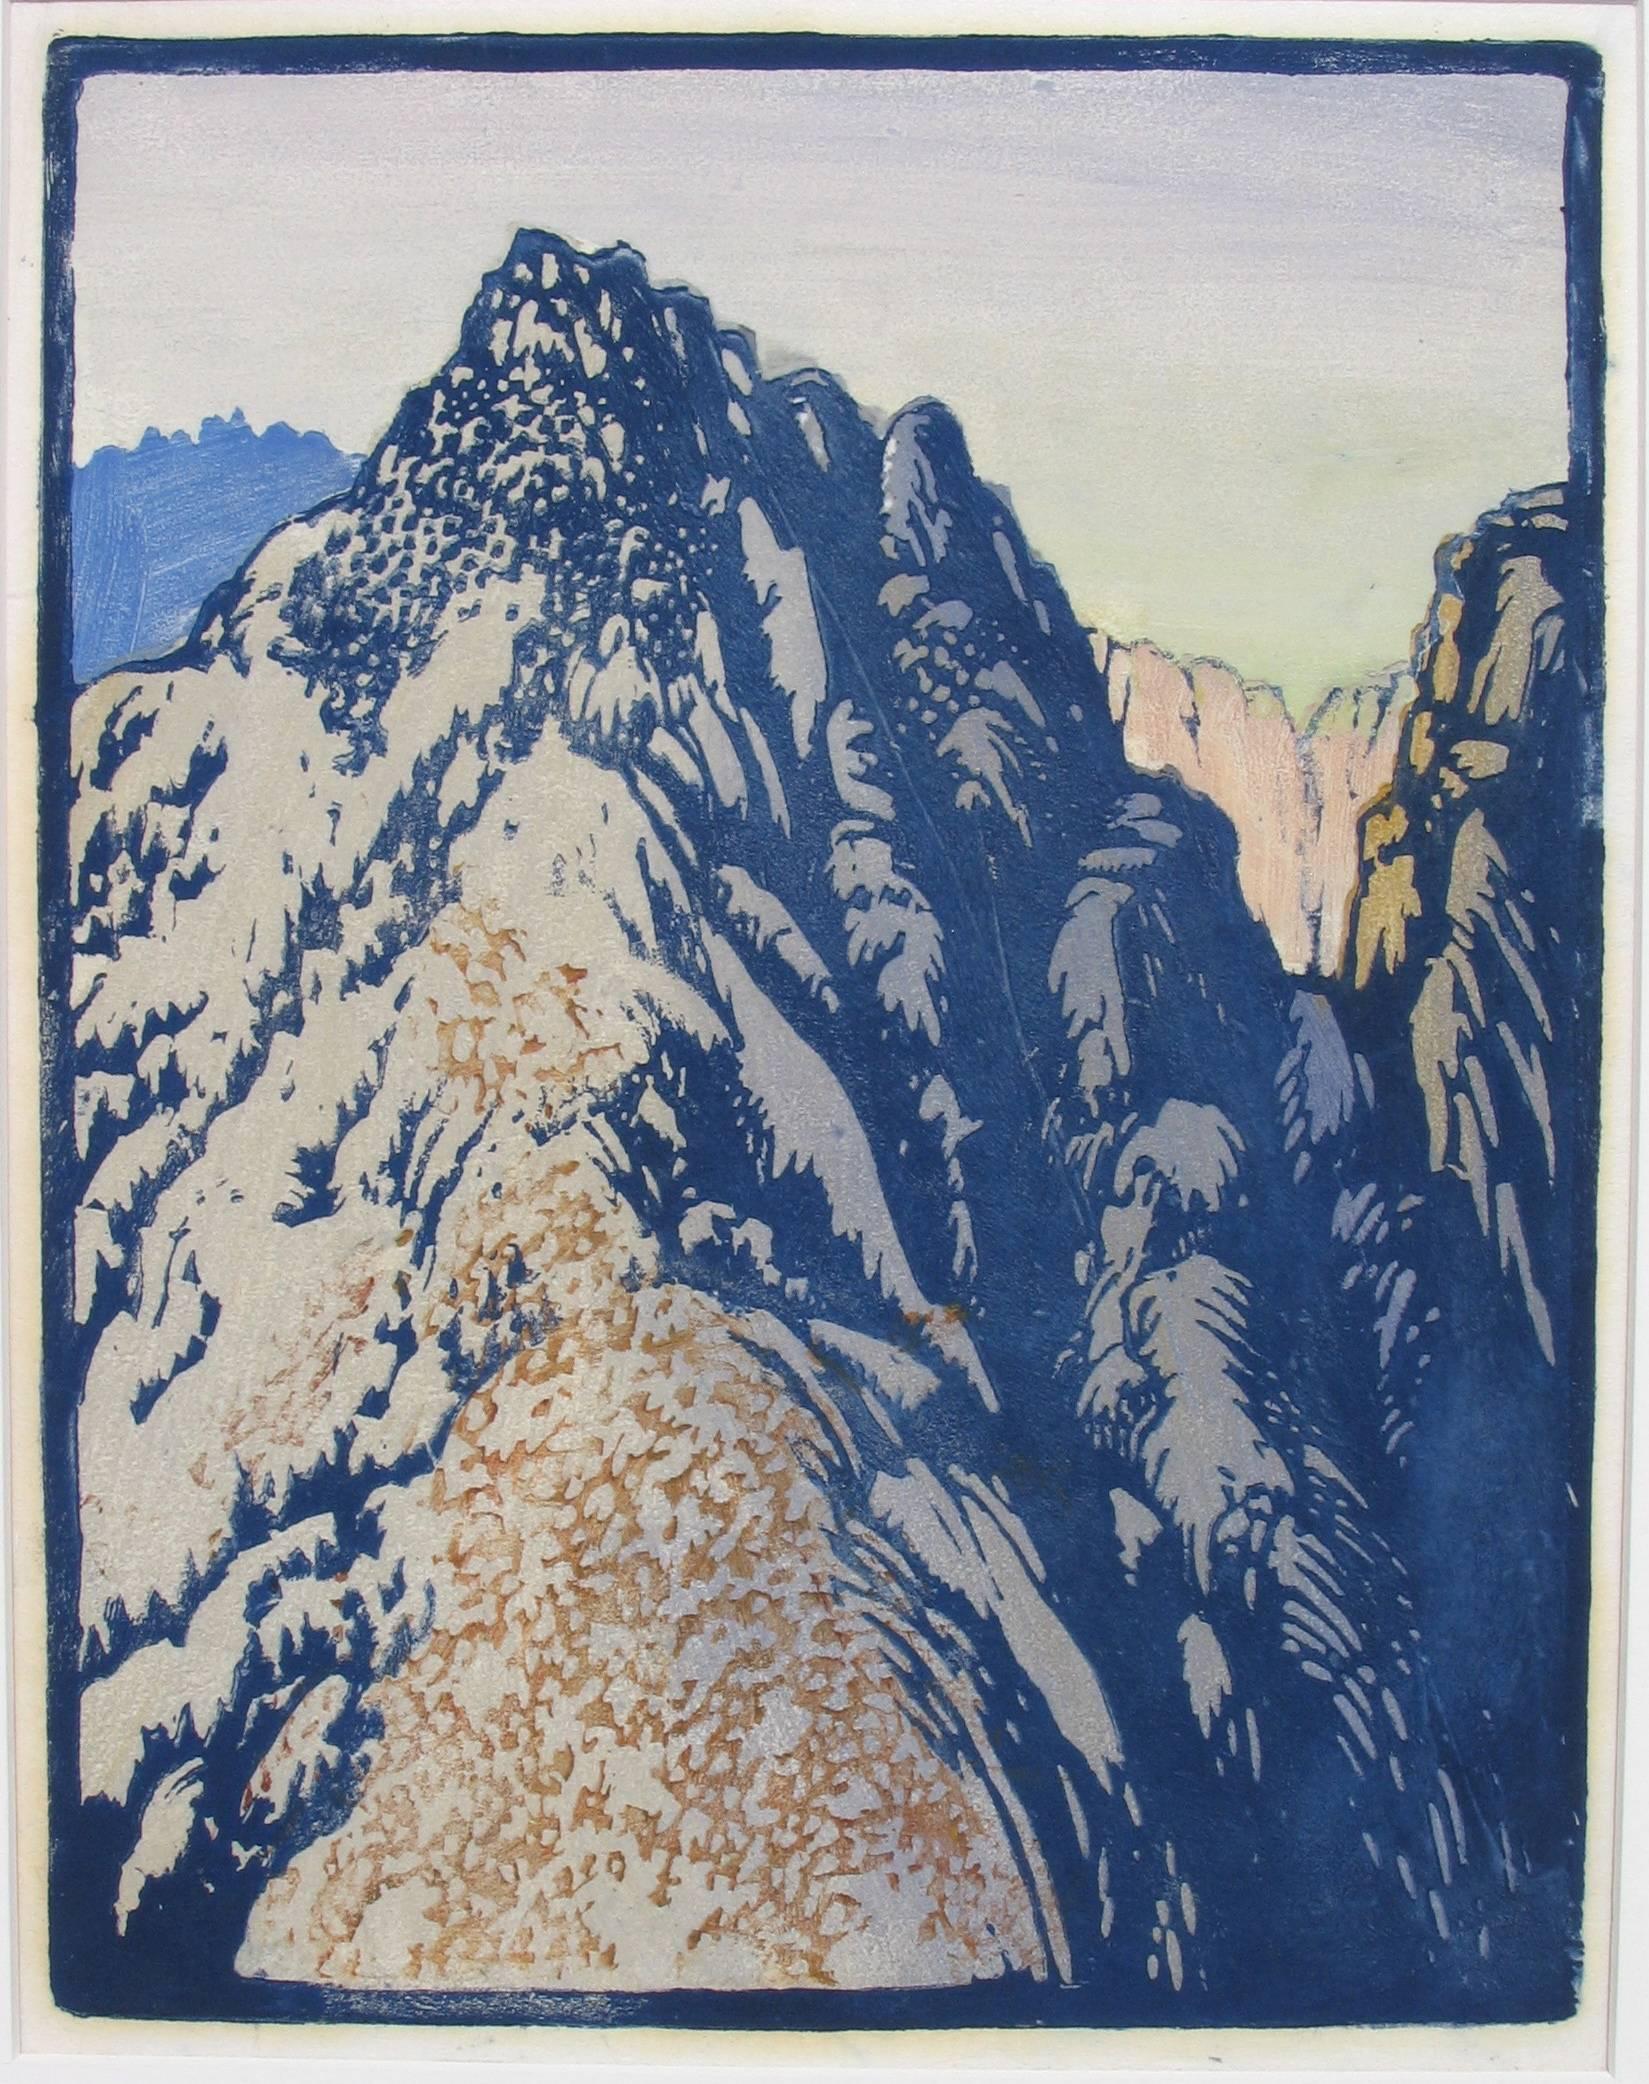 FRANCES H. GEARHART (1869-1958)

BARRIÈRE DU DESERT  c. 1933
Impression en bloc de couleurs, non signé  12 x 9 ¼